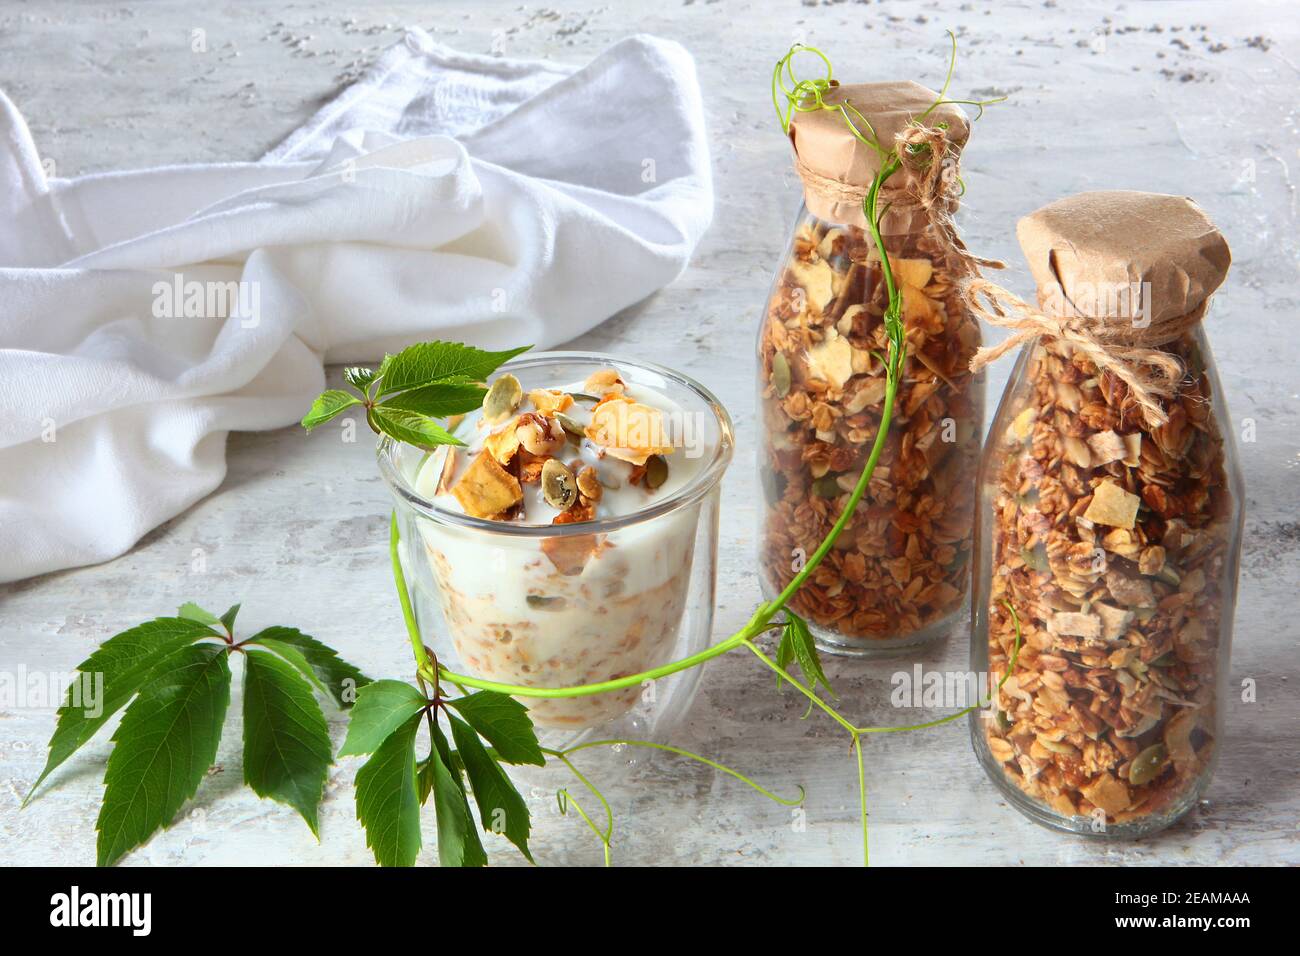 Müsli mit Joghurt in klarem Glas auf hellem Hintergrund. Granola in einer Glasflasche. Gesunde kalorienarme Lebensmittel. Naturprodukt. Vegetarisches Essen. Stockfoto